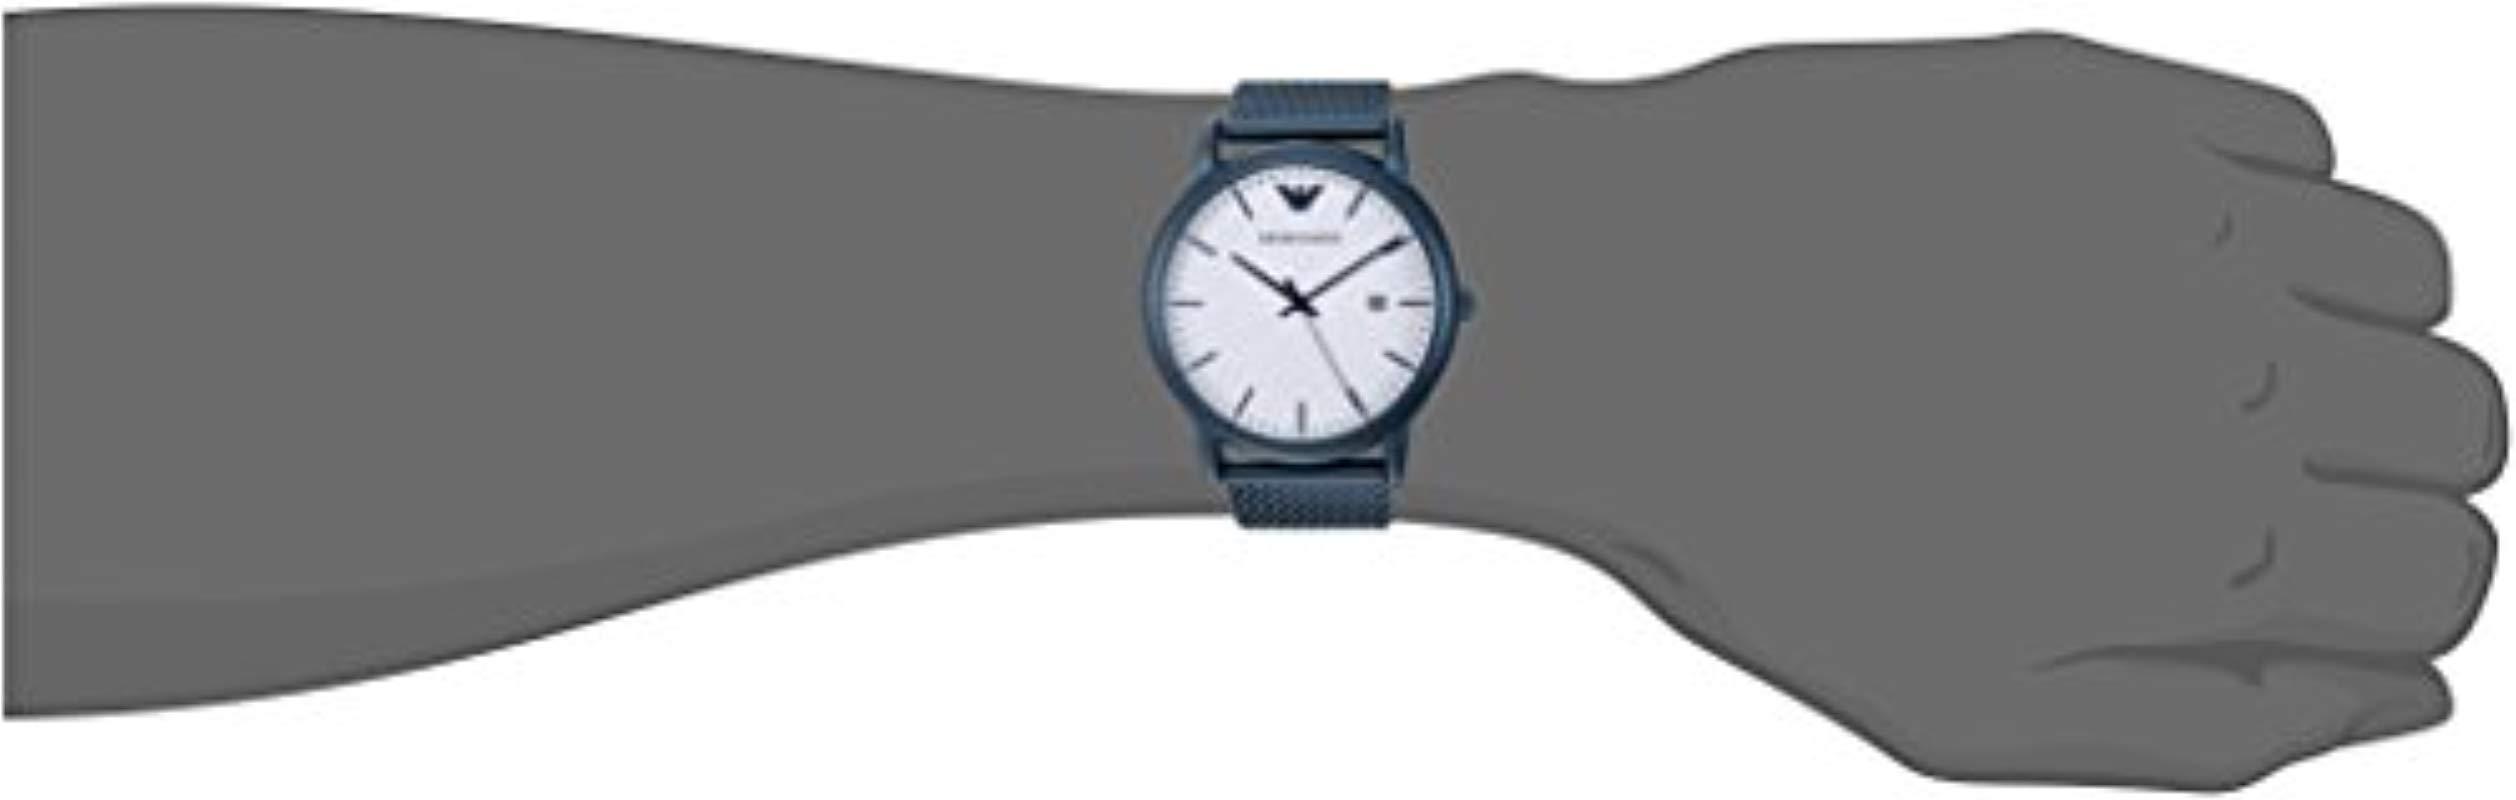 ar11025 armani watch